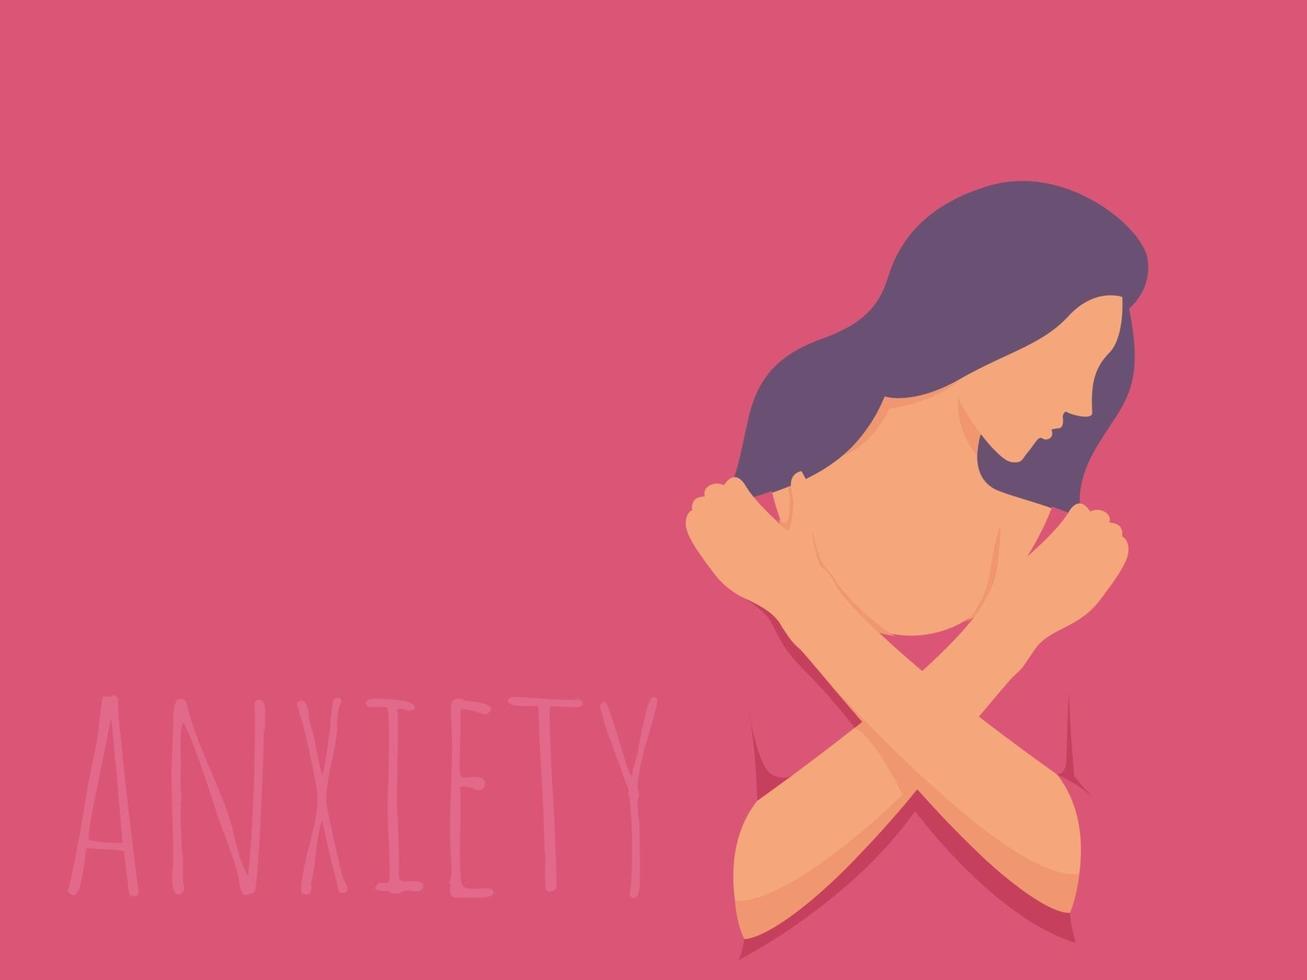 mujer triste que siente ansiedad, concepto de problema psicológico, enfermedad mental y violencia. vector